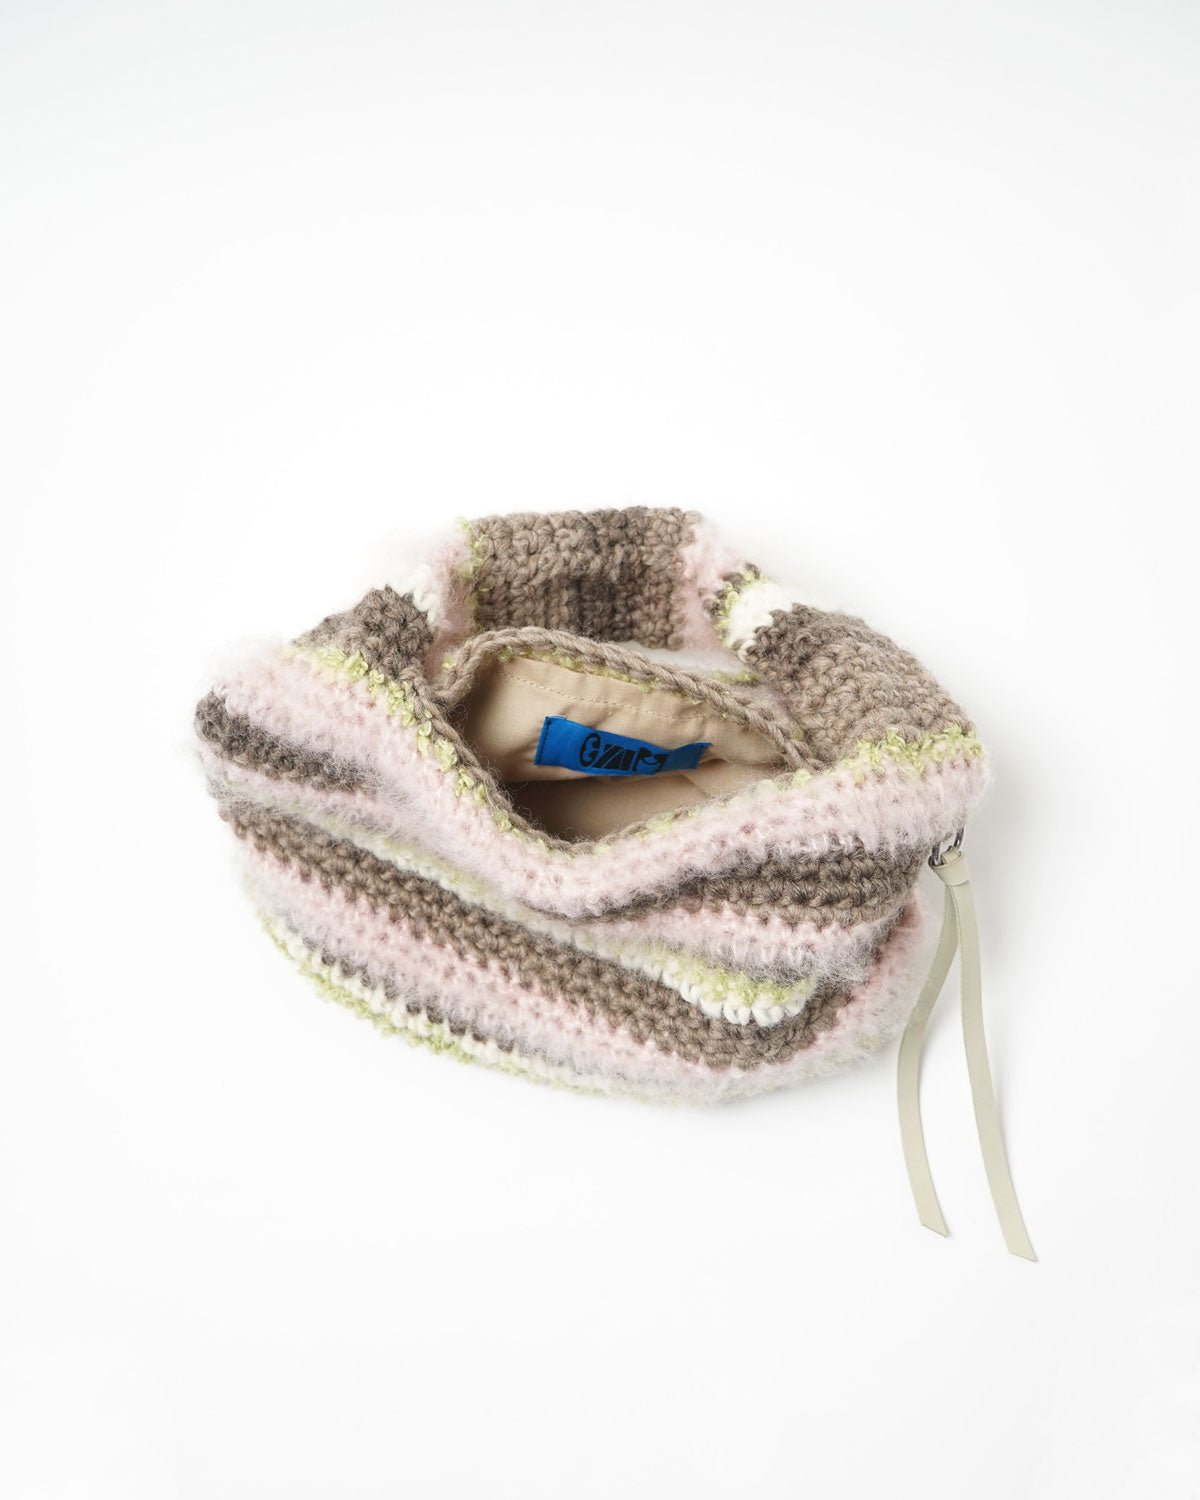 Hand Knitting Crochet Hand Bag 01